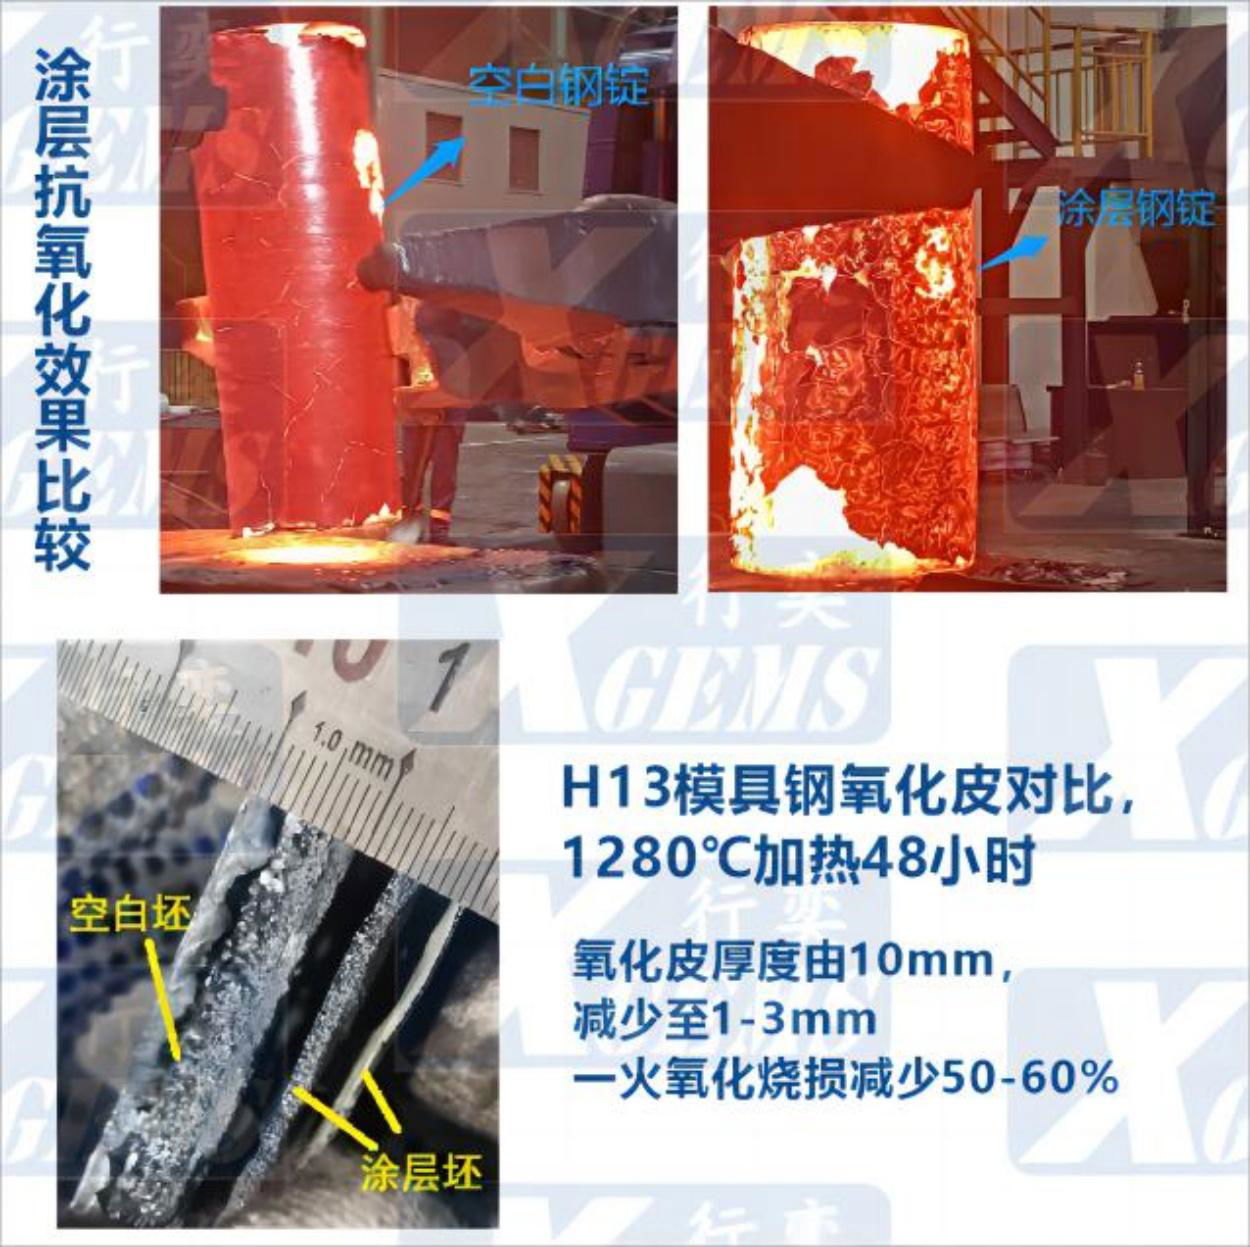 鍛造及熱處理用工具鋼防氧化塗料